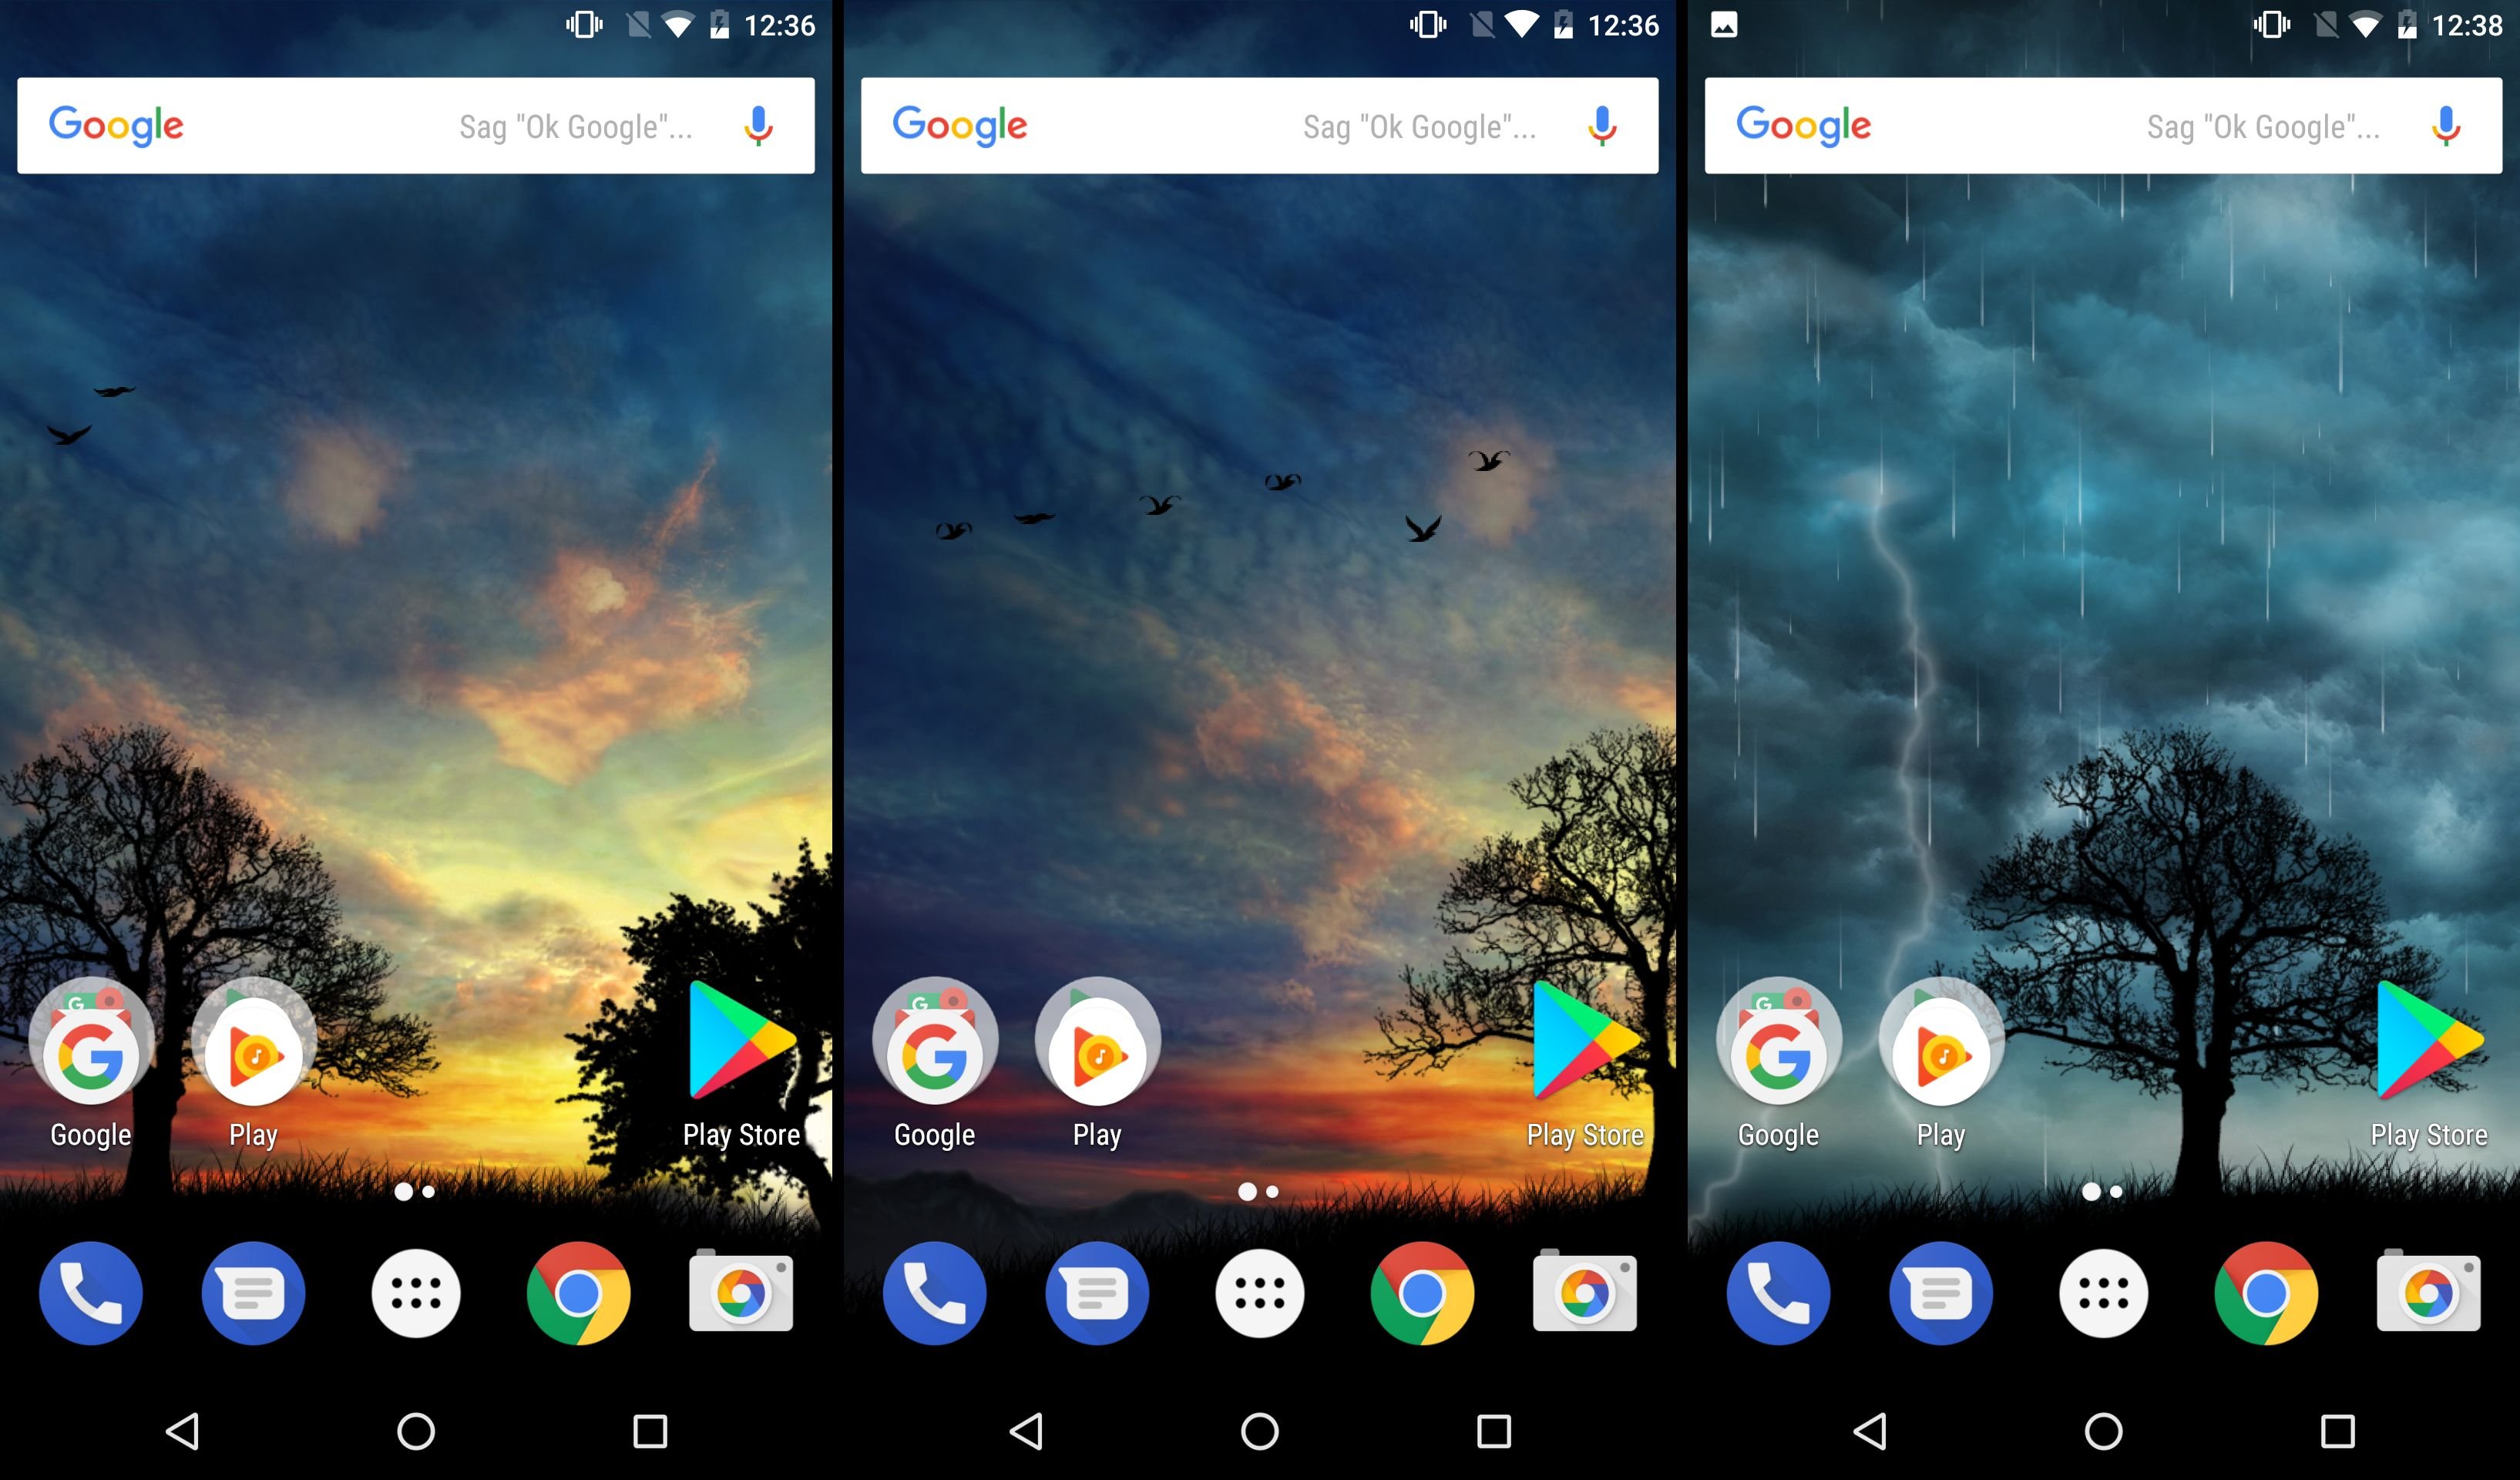 Hintergrundbilder In Android Wallpaper Herunterladen Und Einrichten Nextpit Finden und downloaden sie kostenlose grafikressourcen. hintergrundbilder in android wallpaper